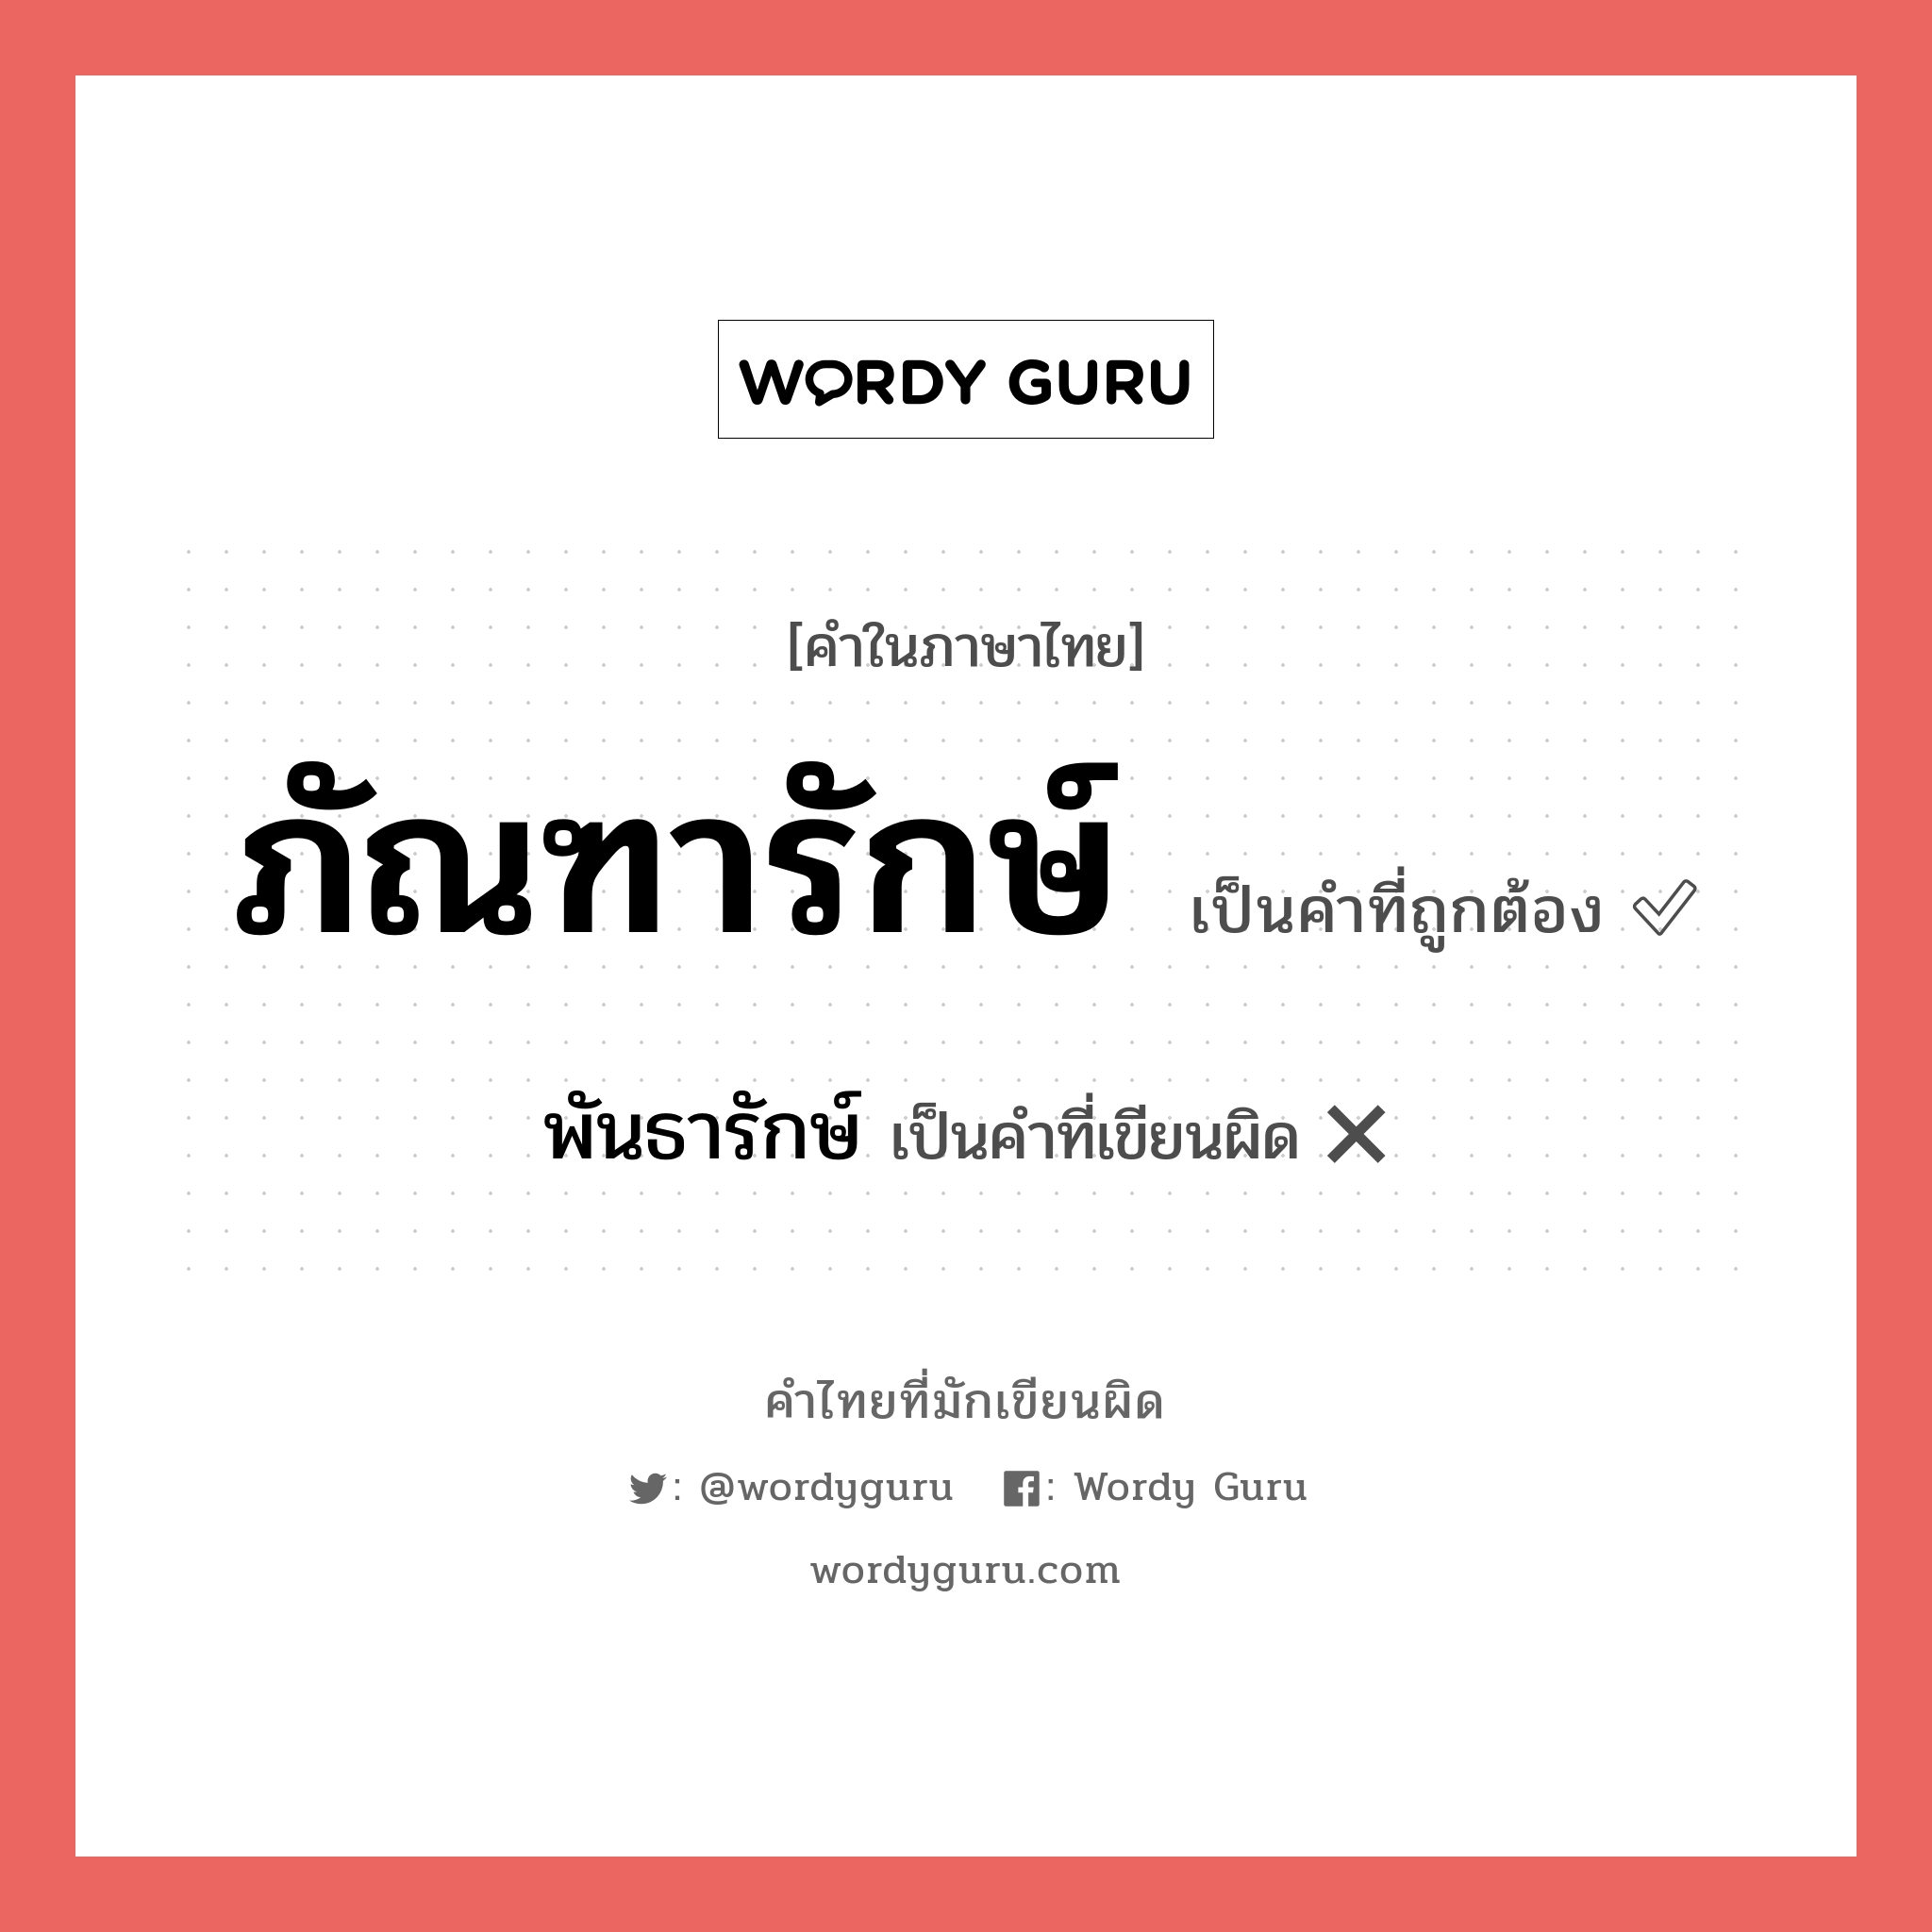 พันธารักษ์ หรือ ภัณฑารักษ์ คำไหนเขียนถูก?, คำในภาษาไทยที่มักเขียนผิด พันธารักษ์ คำที่ผิด ❌ ภัณฑารักษ์